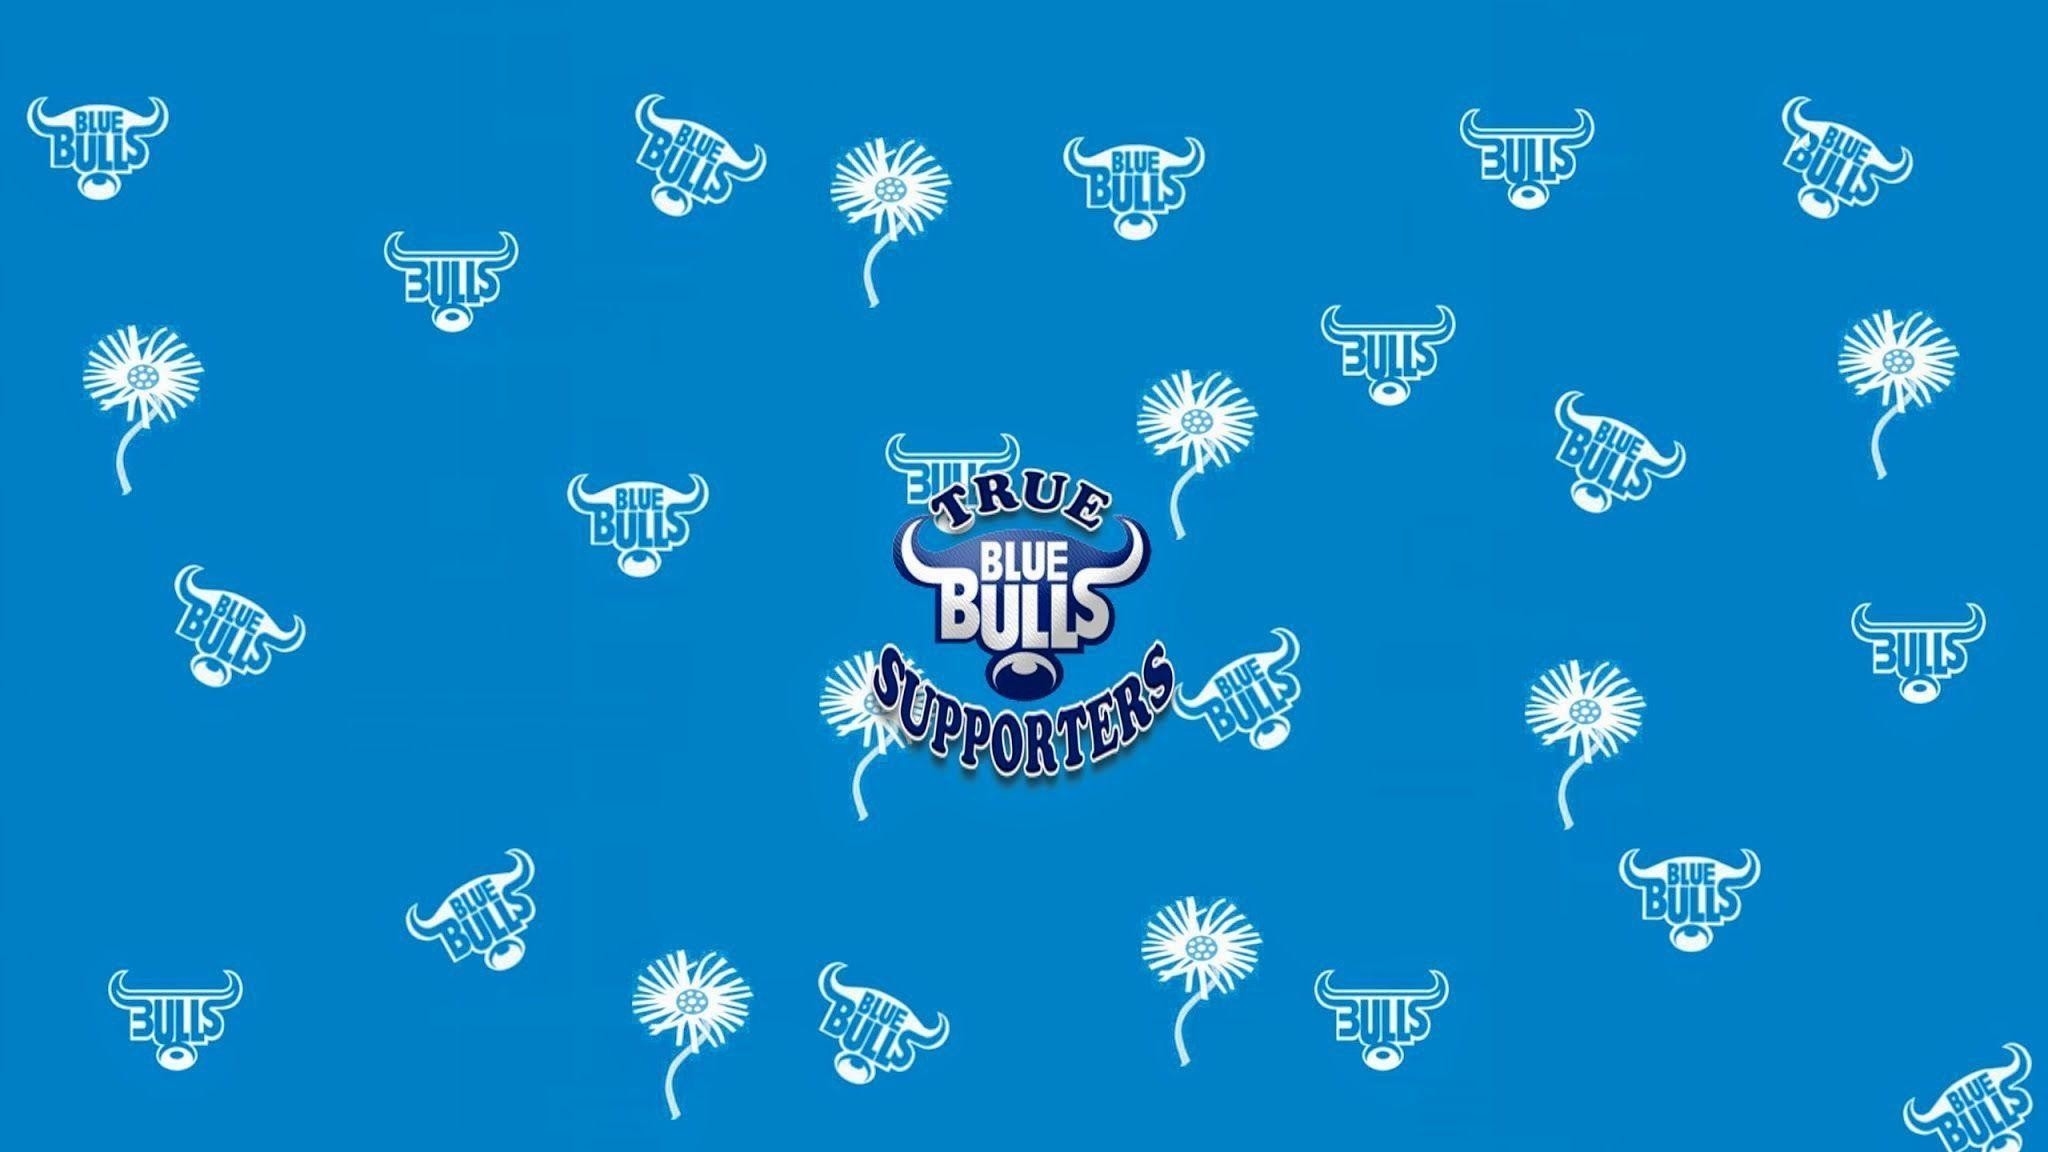 2048x1152  Images For > Blue Bulls Logo Wallpaper